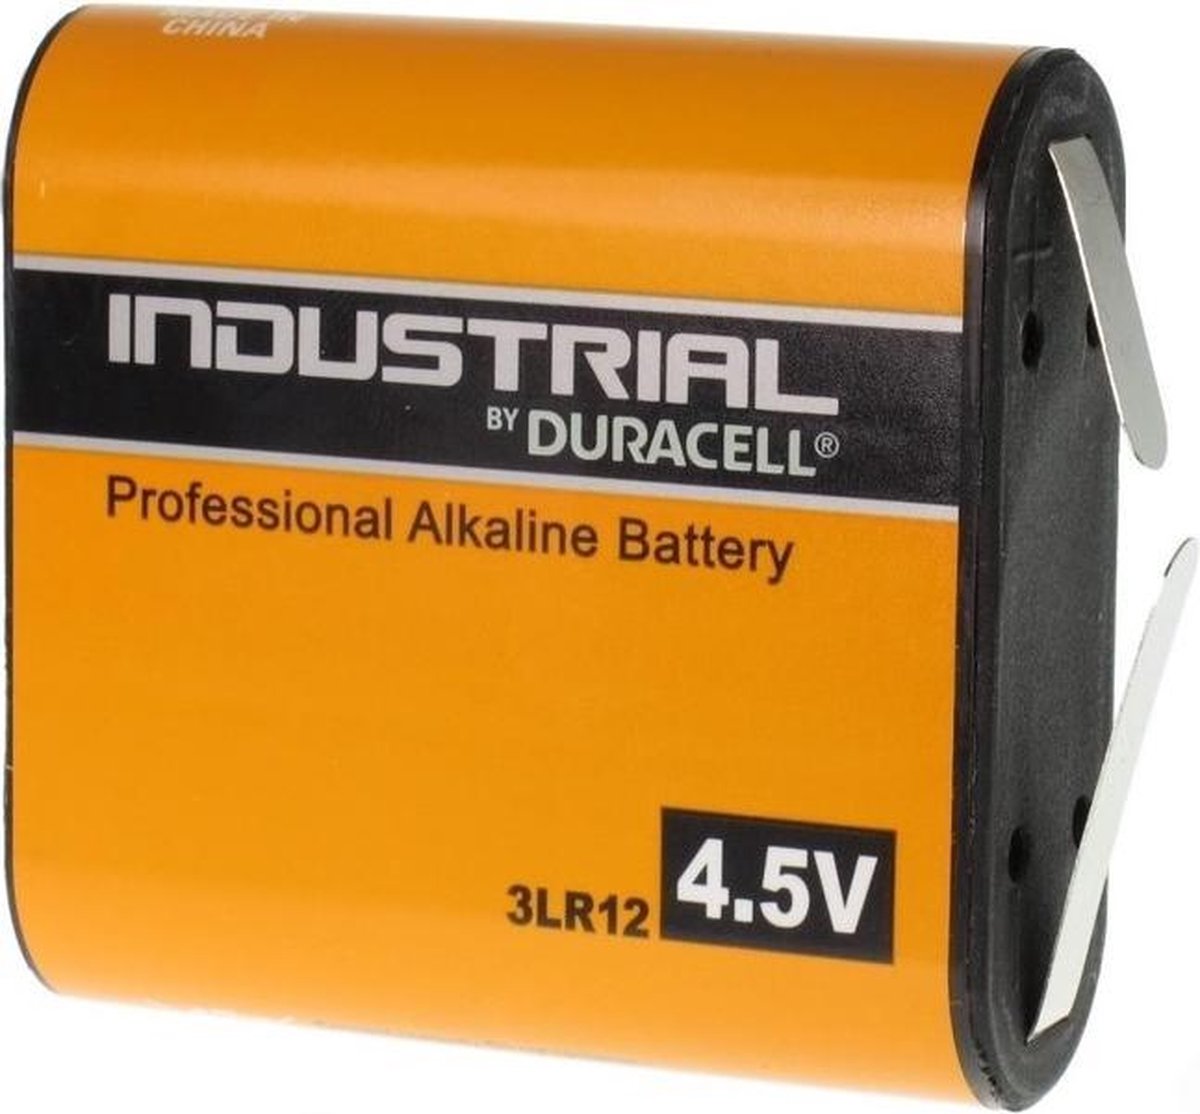 Duracell Industrial 3LR12 batterij 4.5V